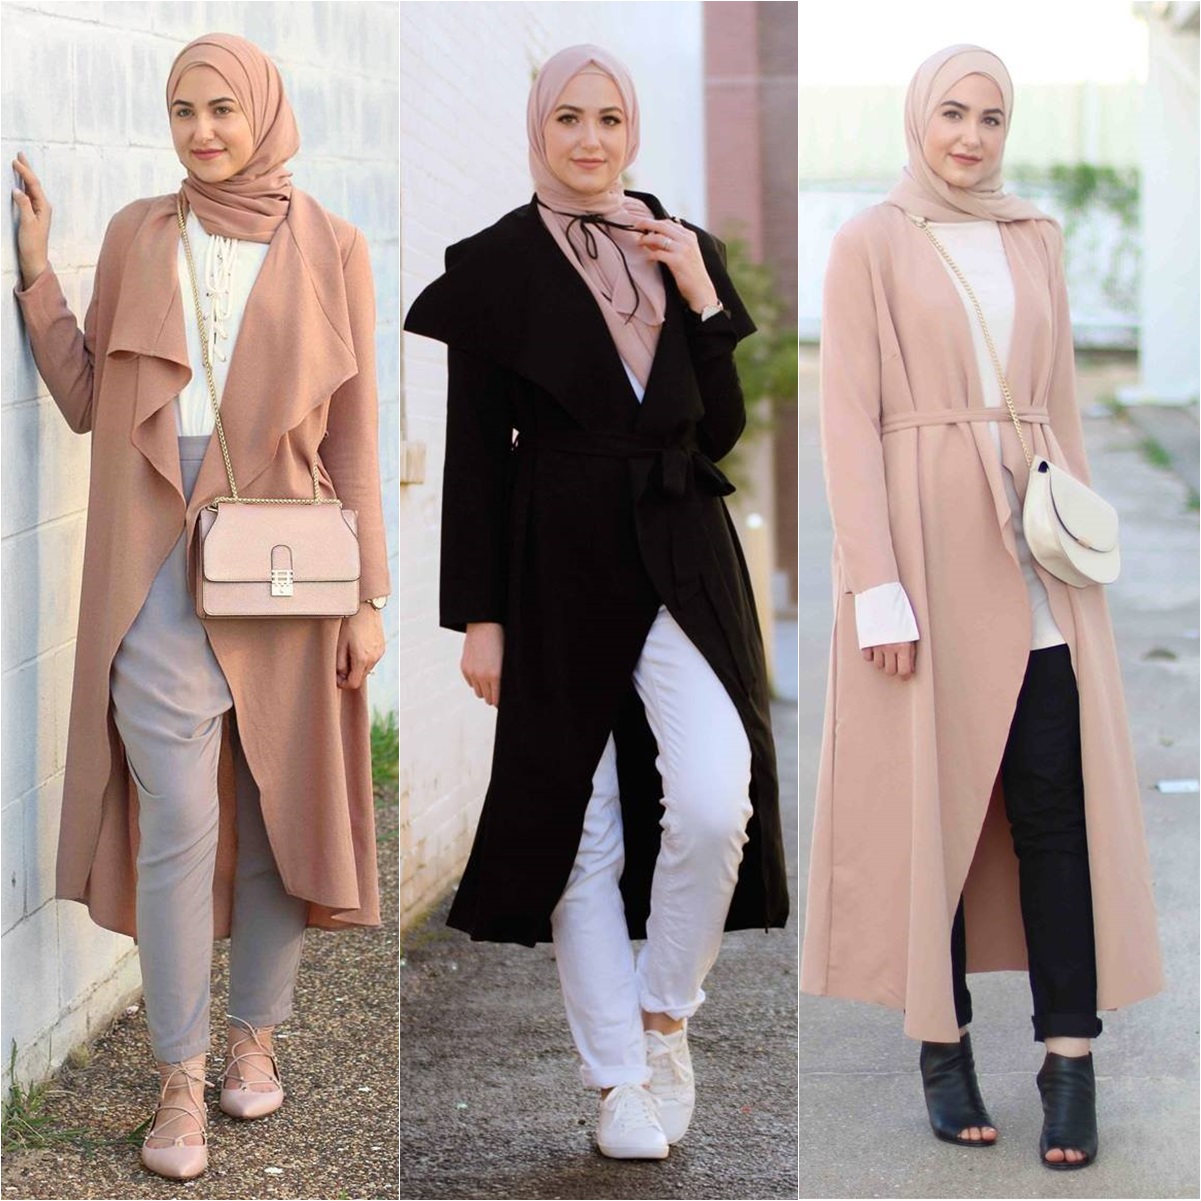 Résultat de recherche d'images pour "hijab fashion 2018"